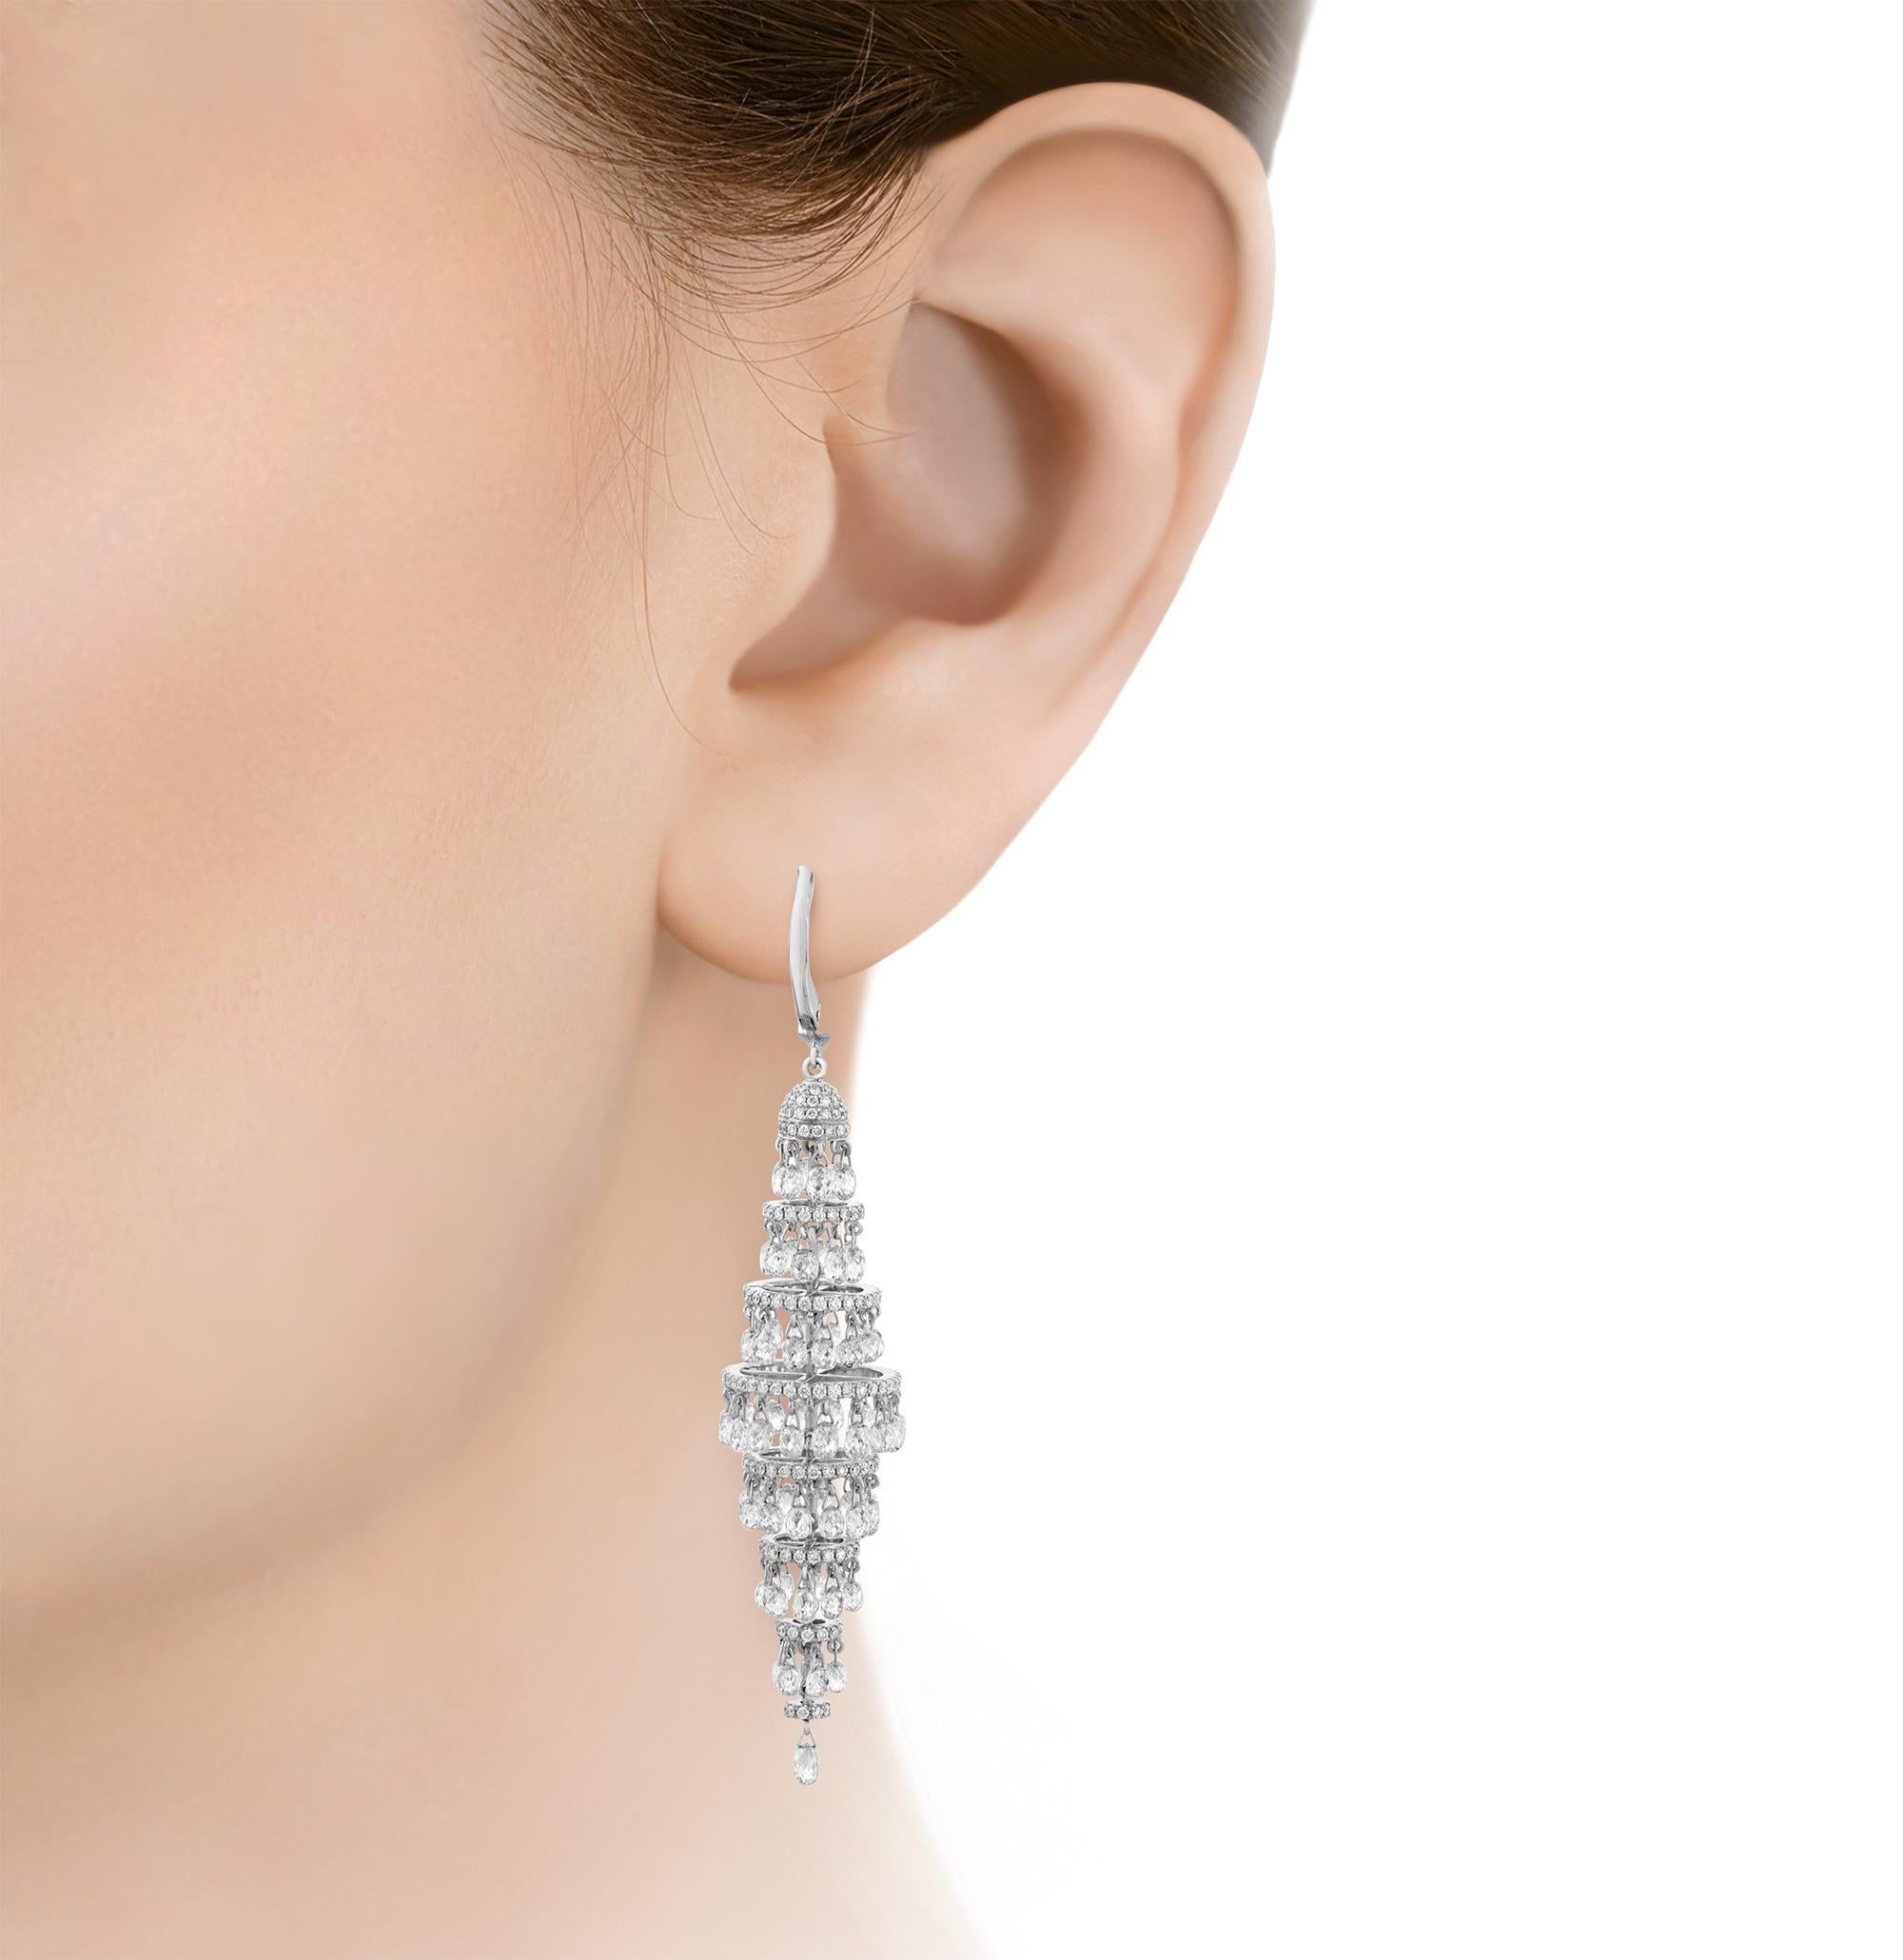 D'un luxe intemporel, cette paire de boucles d'oreilles chandelier rayonnante présente un impressionnant éventail de diamants ronds de taille brillant et briolette totalisant 19,83 carats. Les pierres éblouissantes cascadent avec art dans une